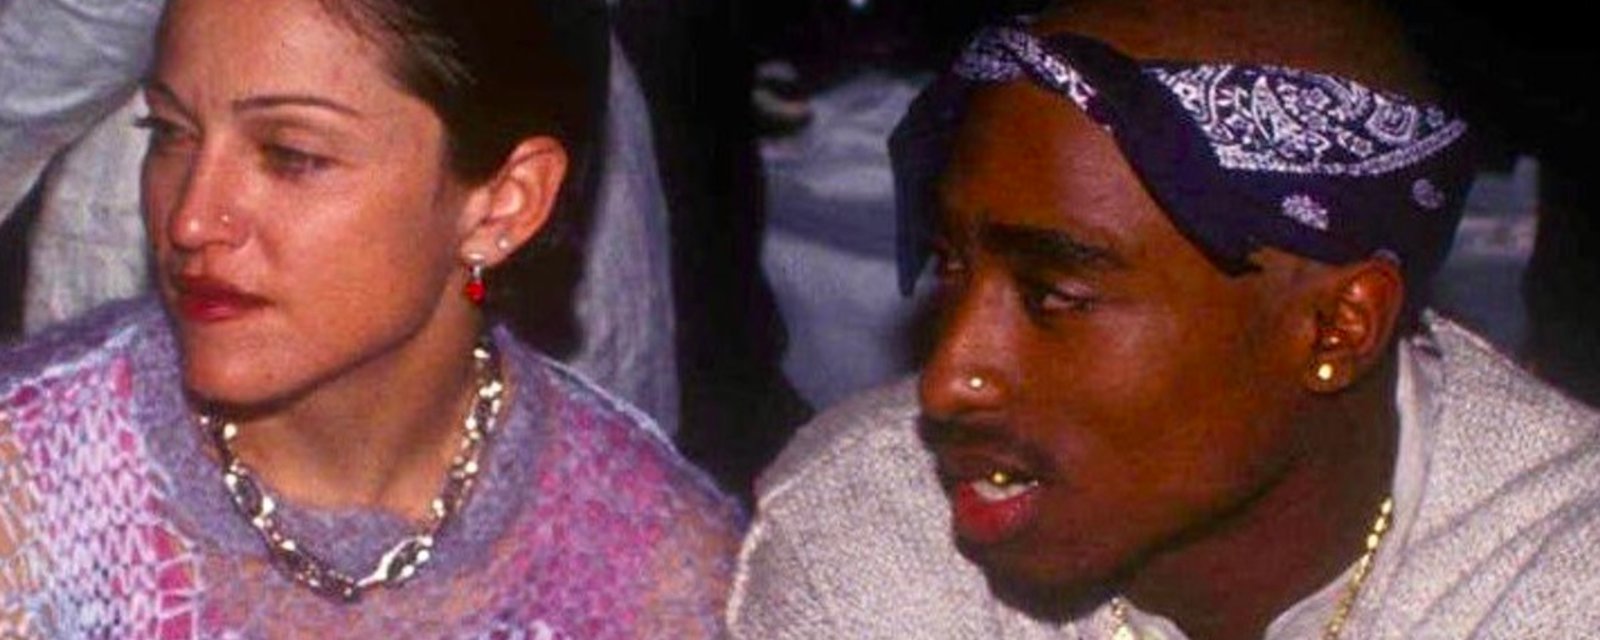 La raison de la séparation de Madonna et Tupac dévoilée au grand jour... et c'est troublant